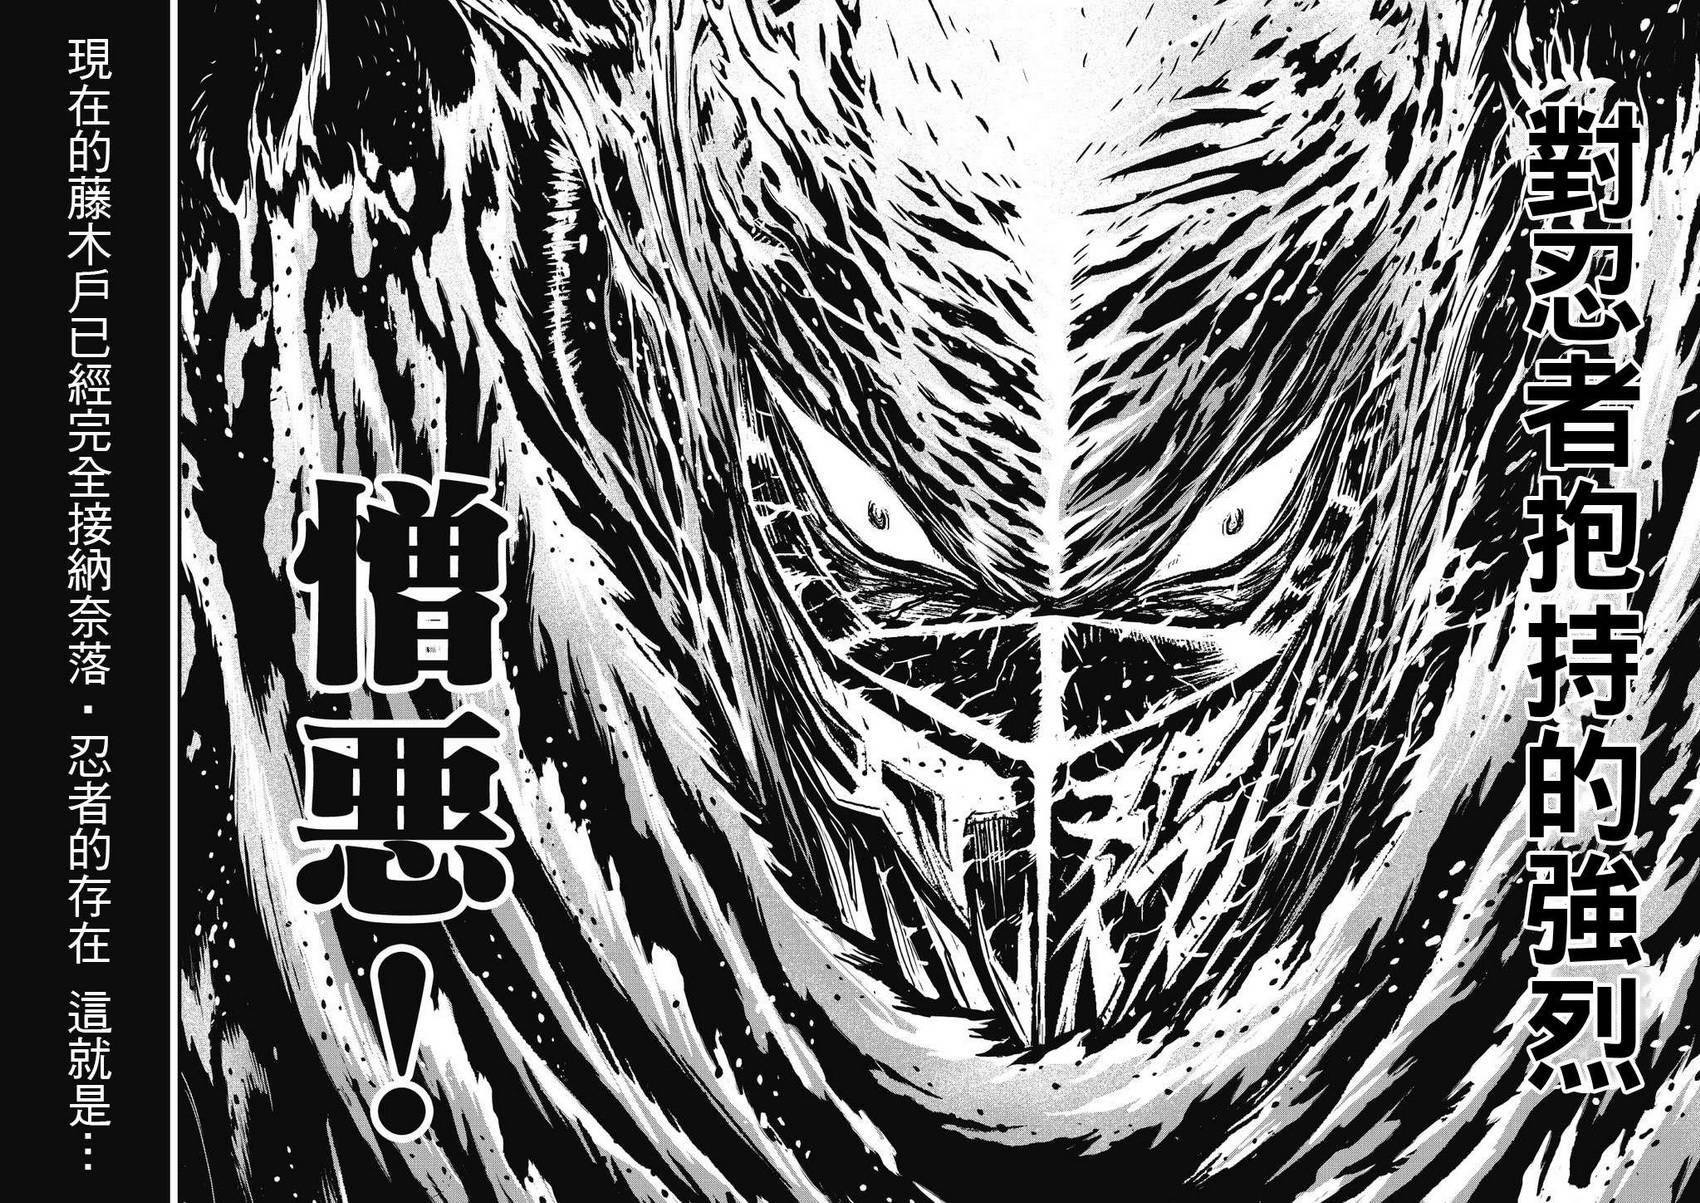 忍者殺手 - 第14卷ネオサイタマ炎上 #7 - 5